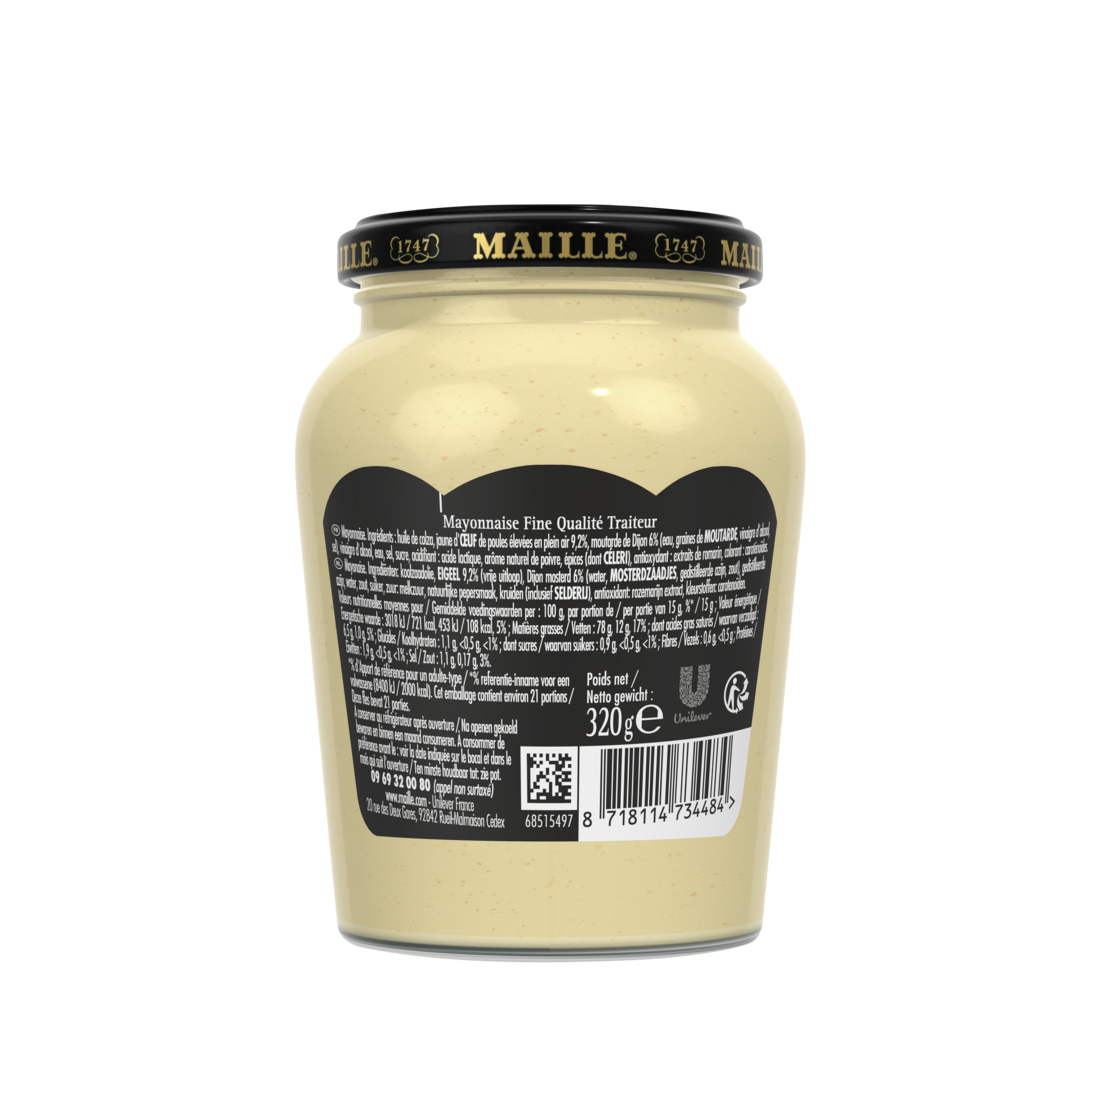 Maille - Mayonnaise Fine Qualité Traiteur Bocal 320 g, backend